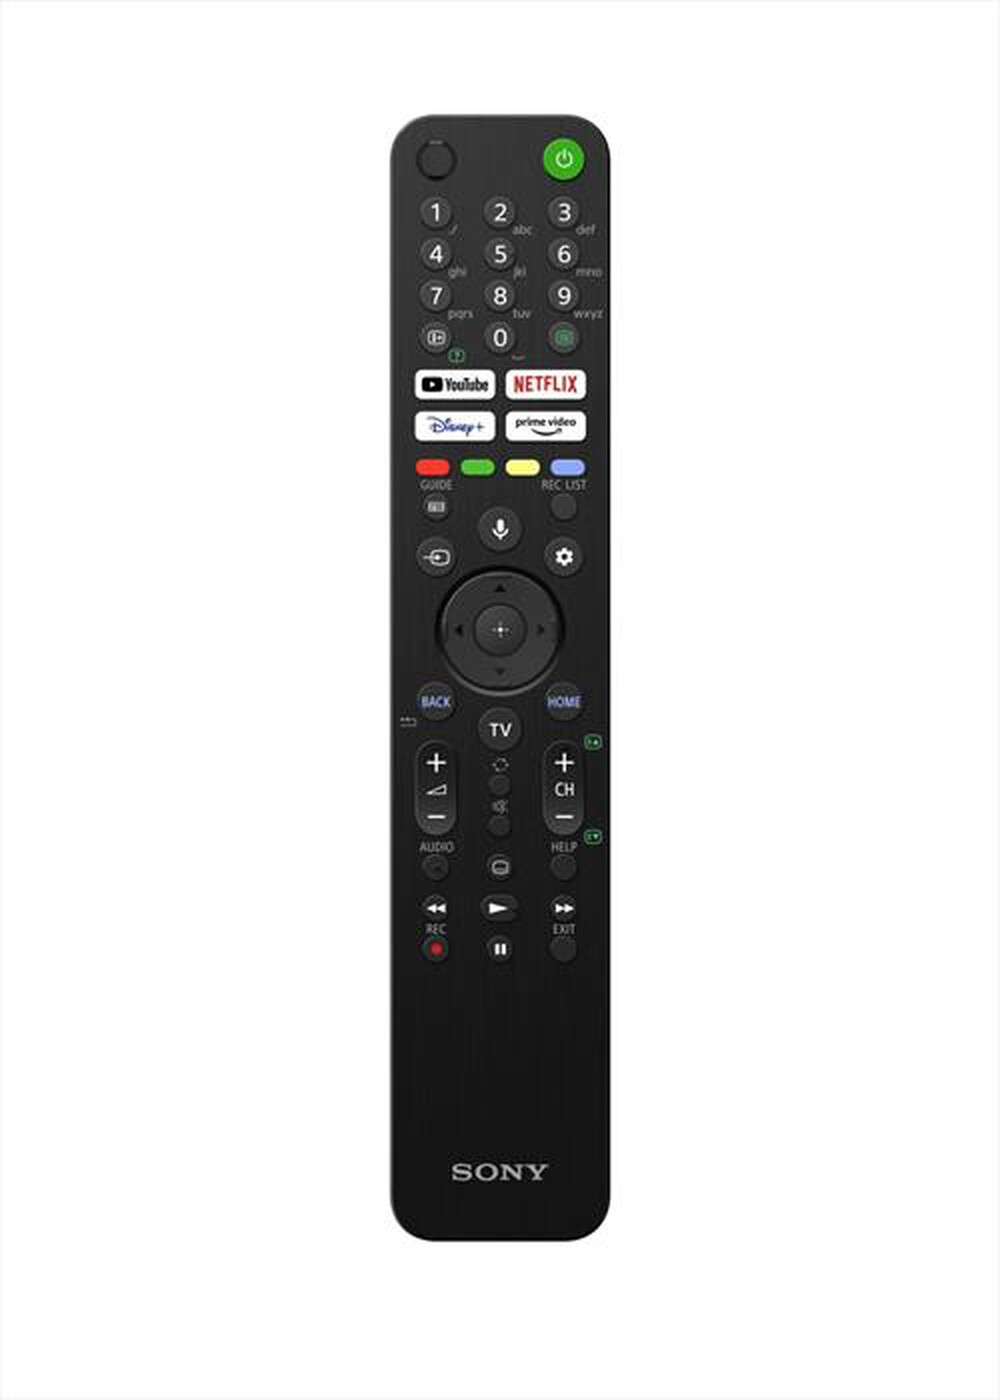 "SONY - SMART TV BRAVIA XR Full Array LED 4K 65\" XR65X90JA"